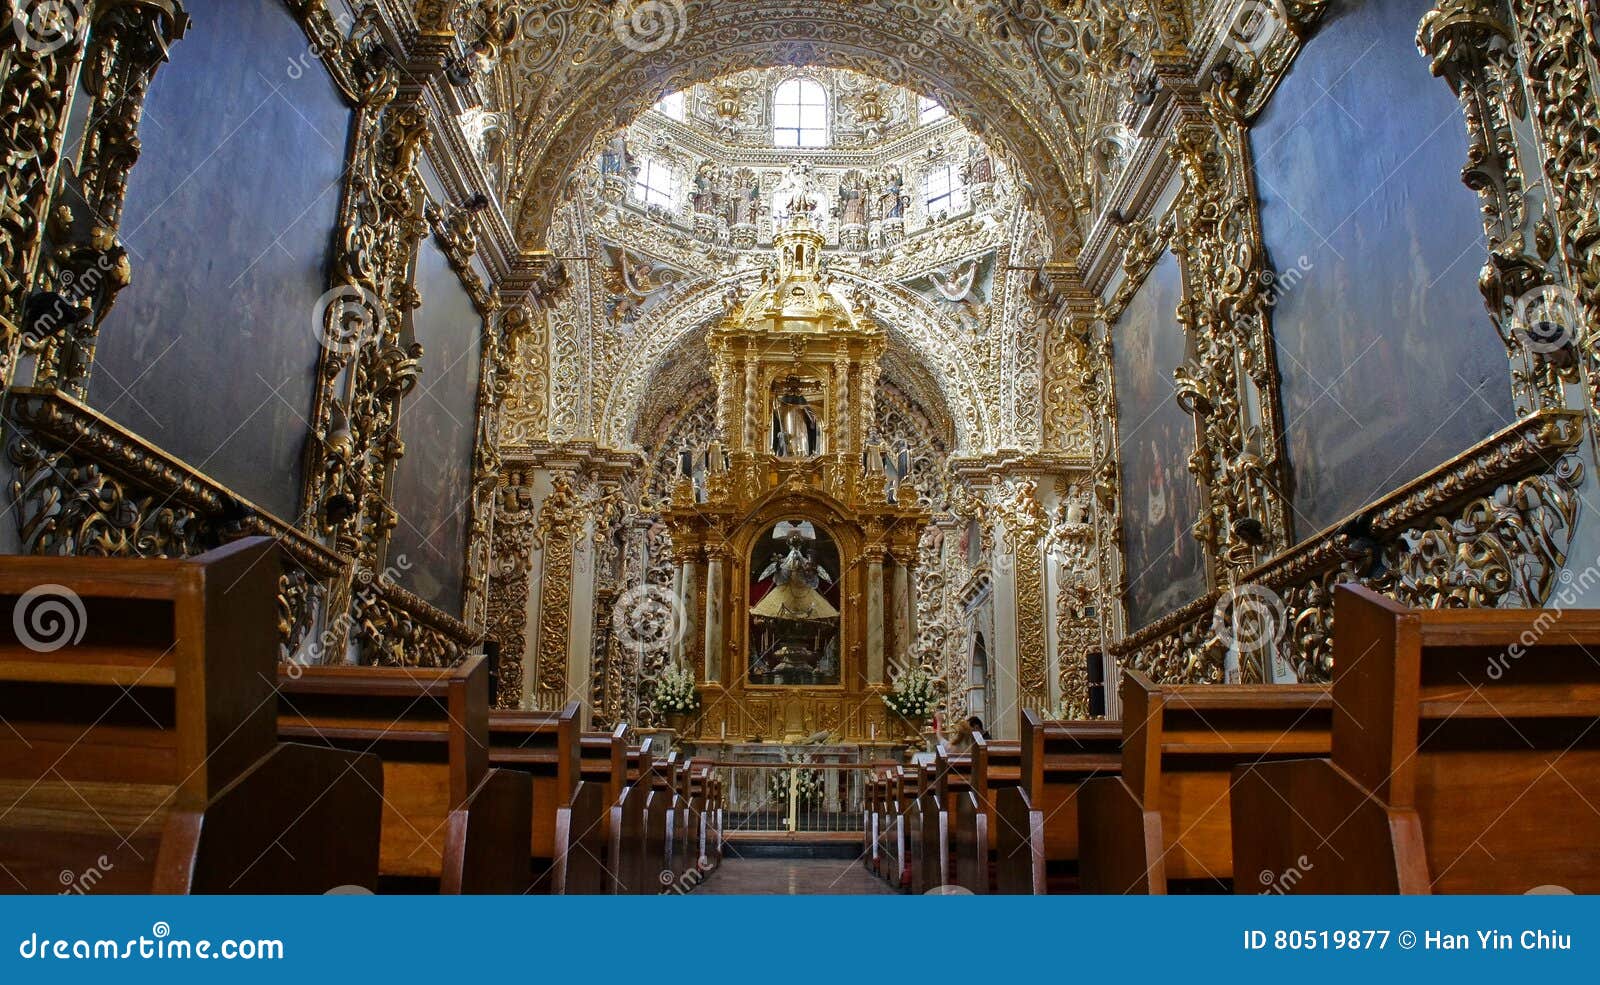 interior view of chapel of the rosary capilla del rosario, city of puebla, mexico